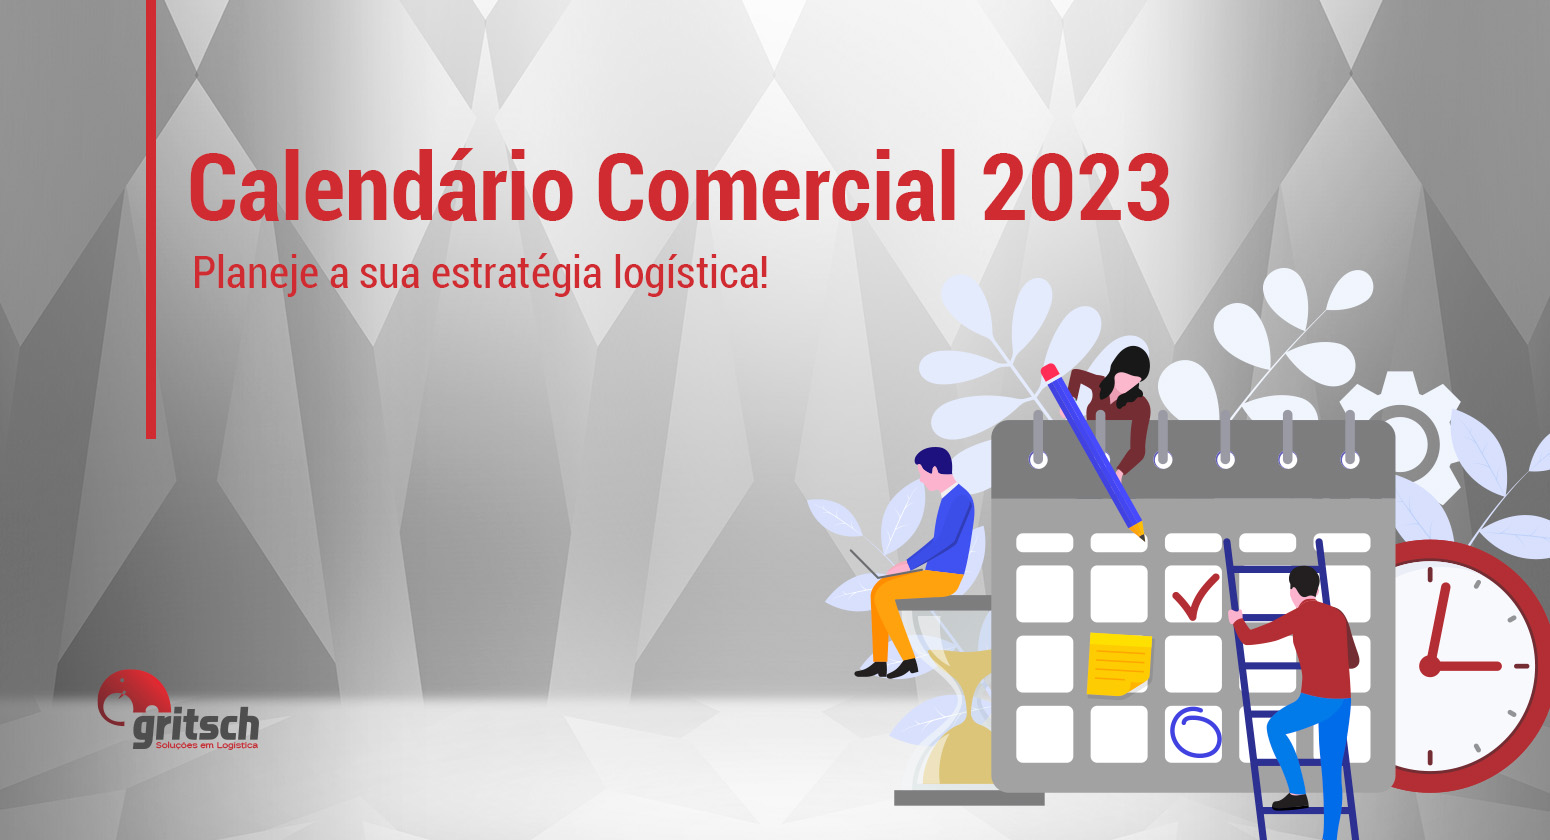 Calendário Comercial 2023 - planeje a sua estratégia logística! - Gritsch